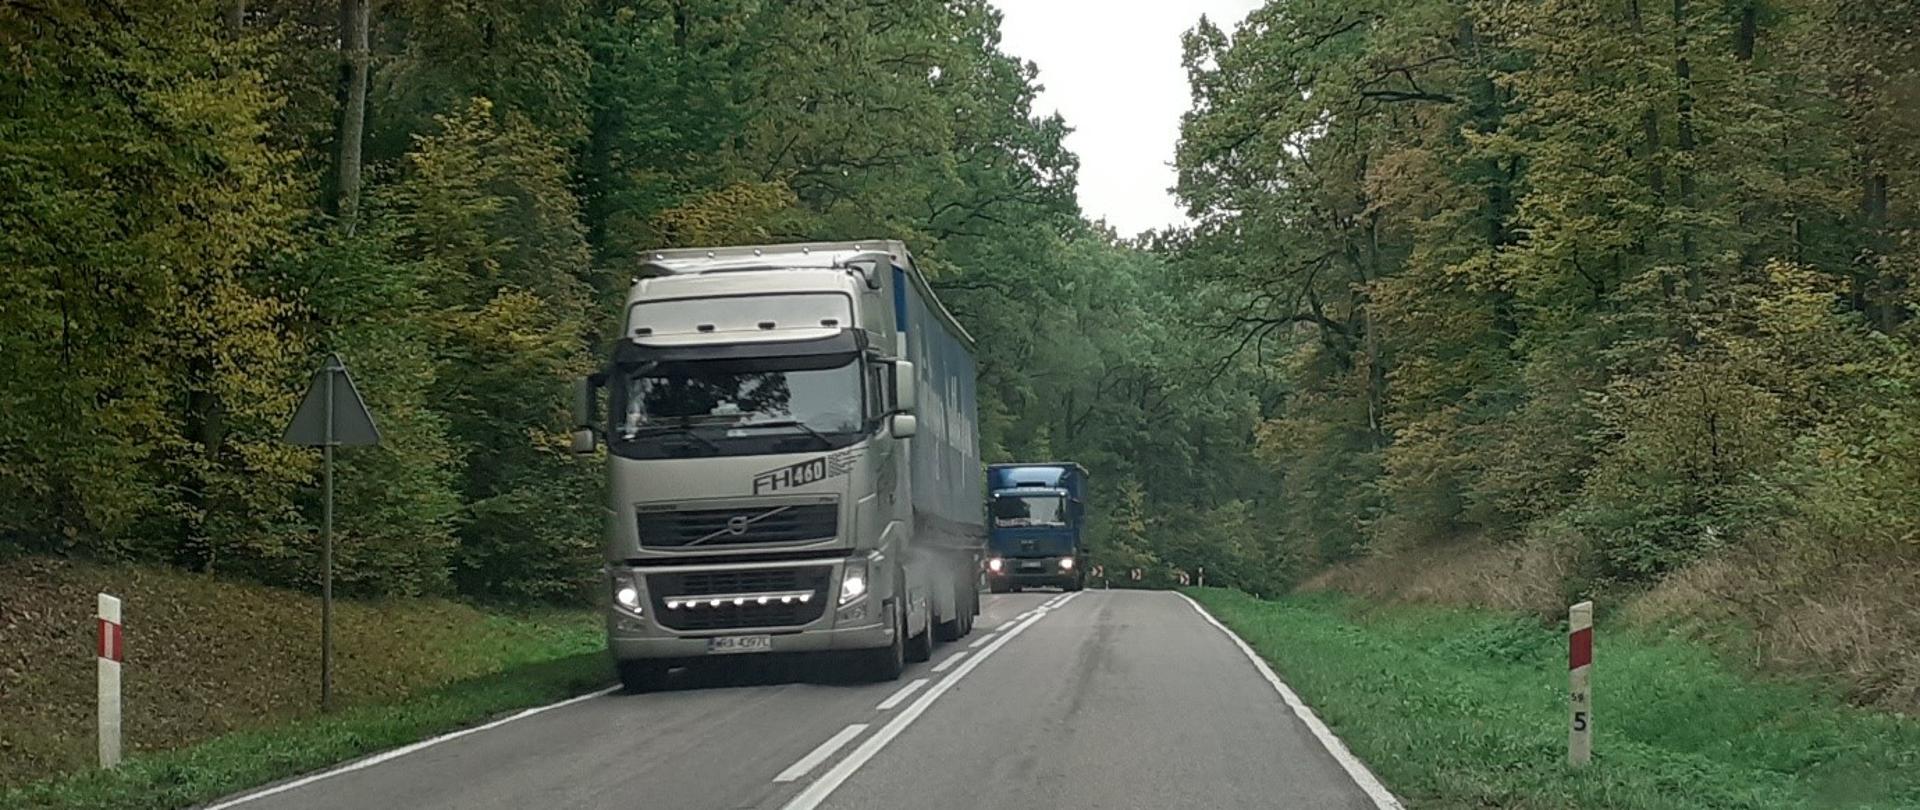 Na zdjęciu widoczna droga jednopasmowa, po której poruszają się samochody ciężarowe. Droga biegnie przez las, drzewa są zielone. Przy drodze widoczne słupki kilometrażowe